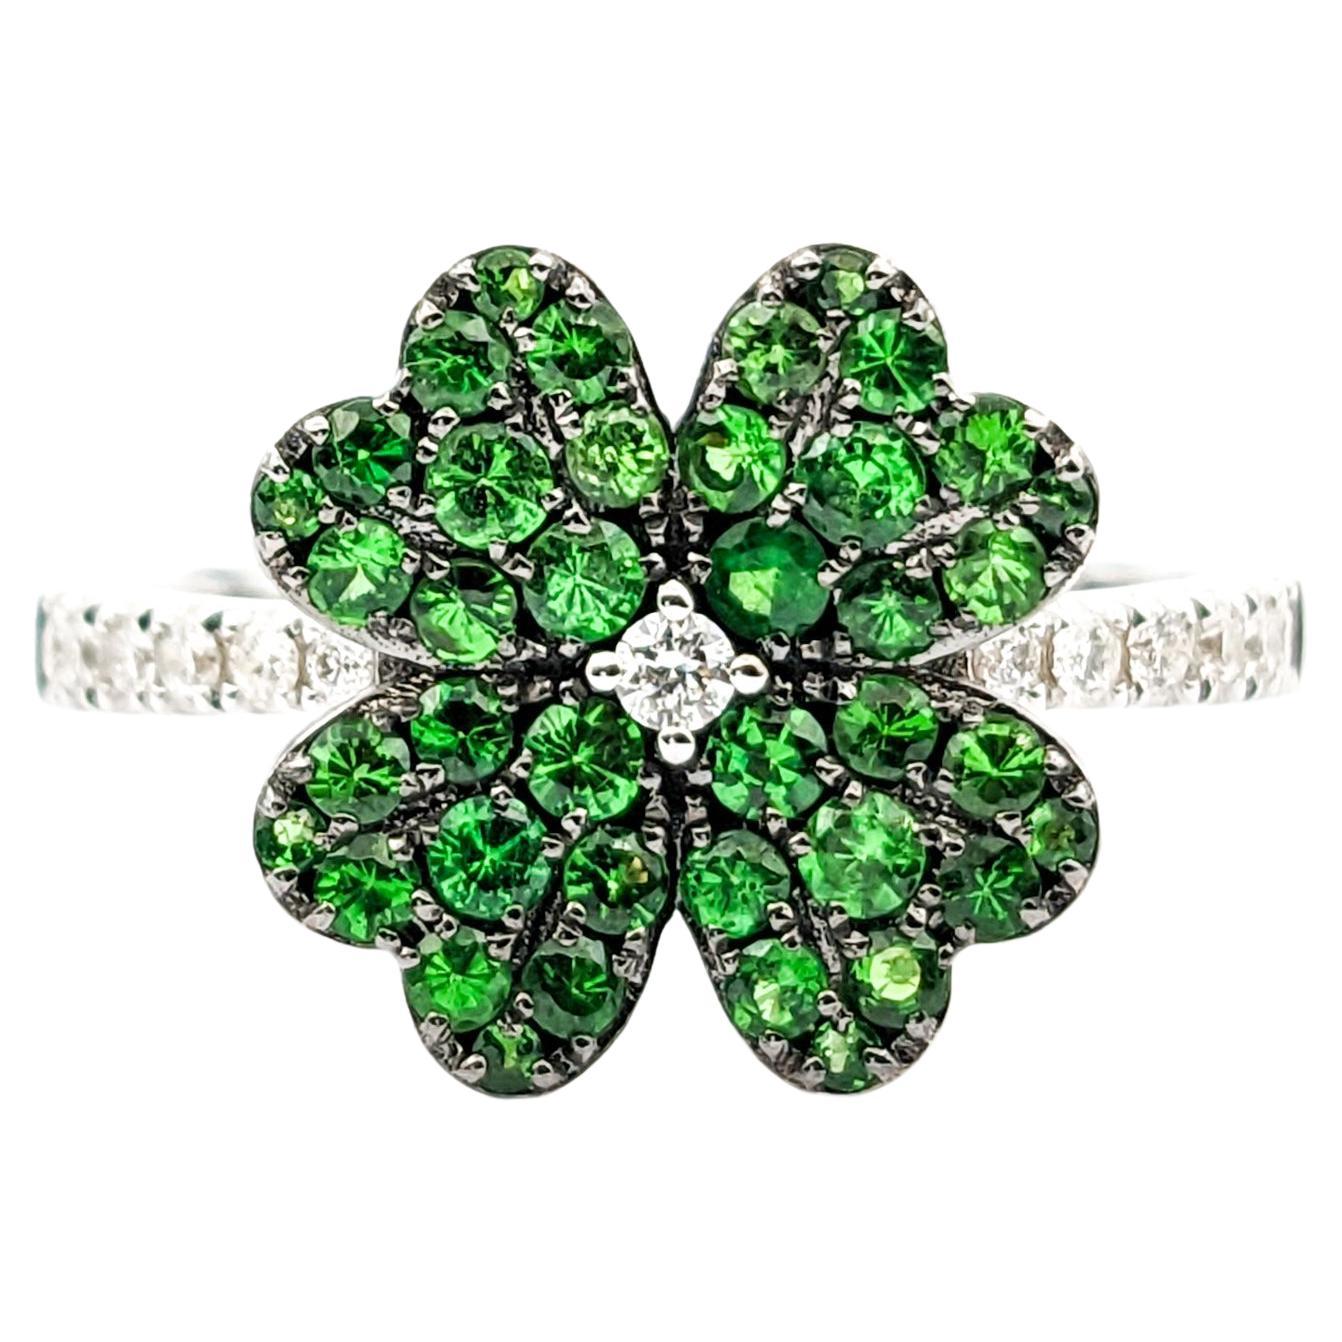 Four Leaf Clover Shamrock Ring with Tsavorite Garnets & Diamonds in 14kt White G